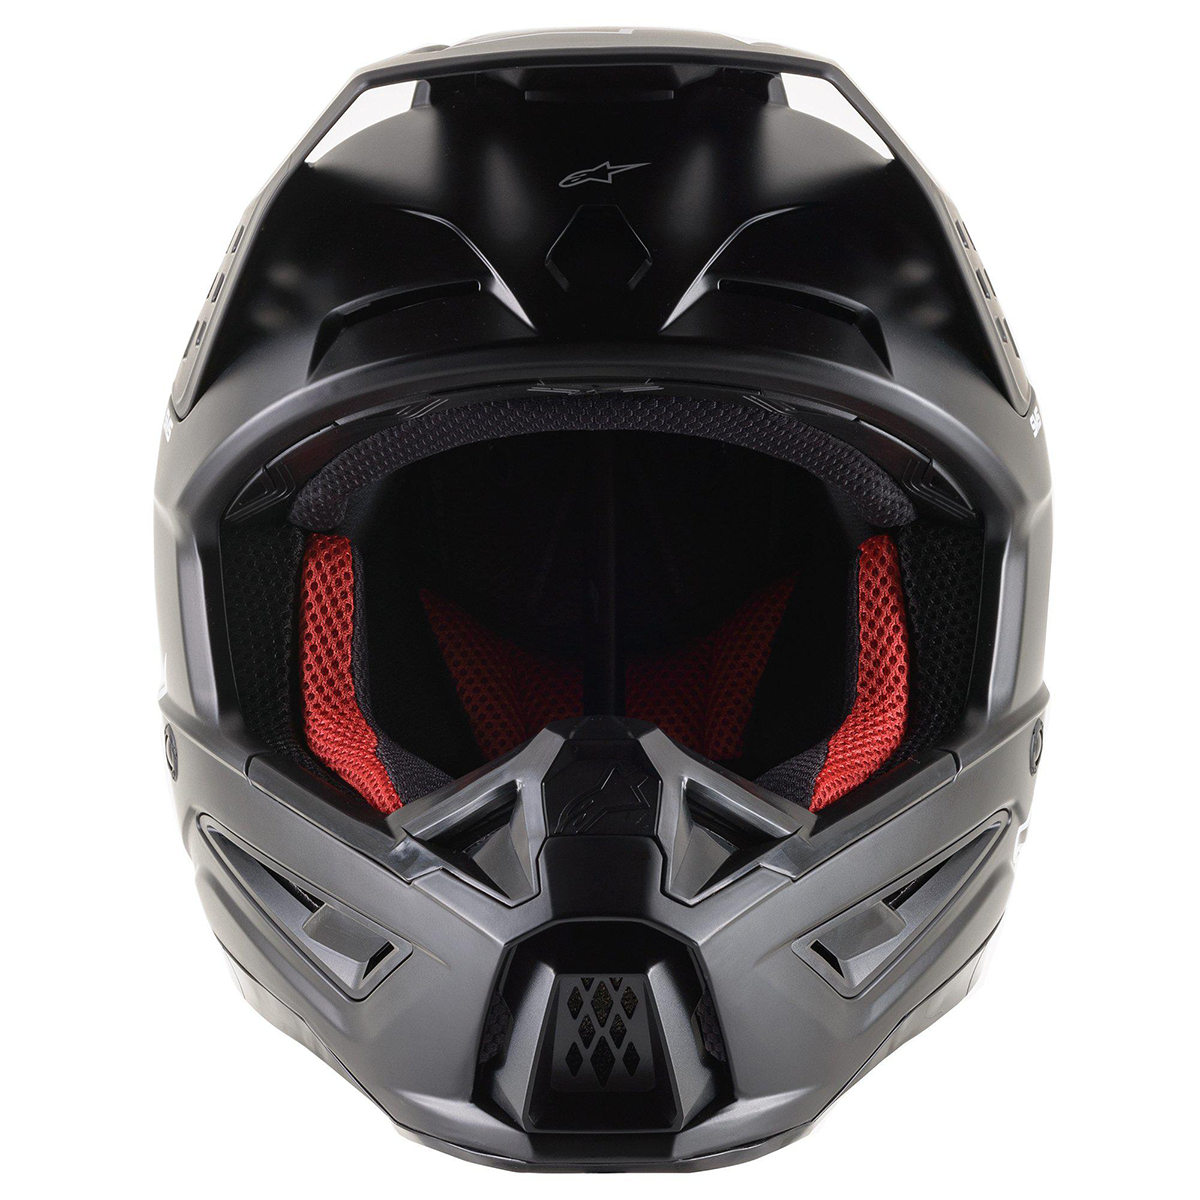 Alpinestars SM5 Solid Helmet